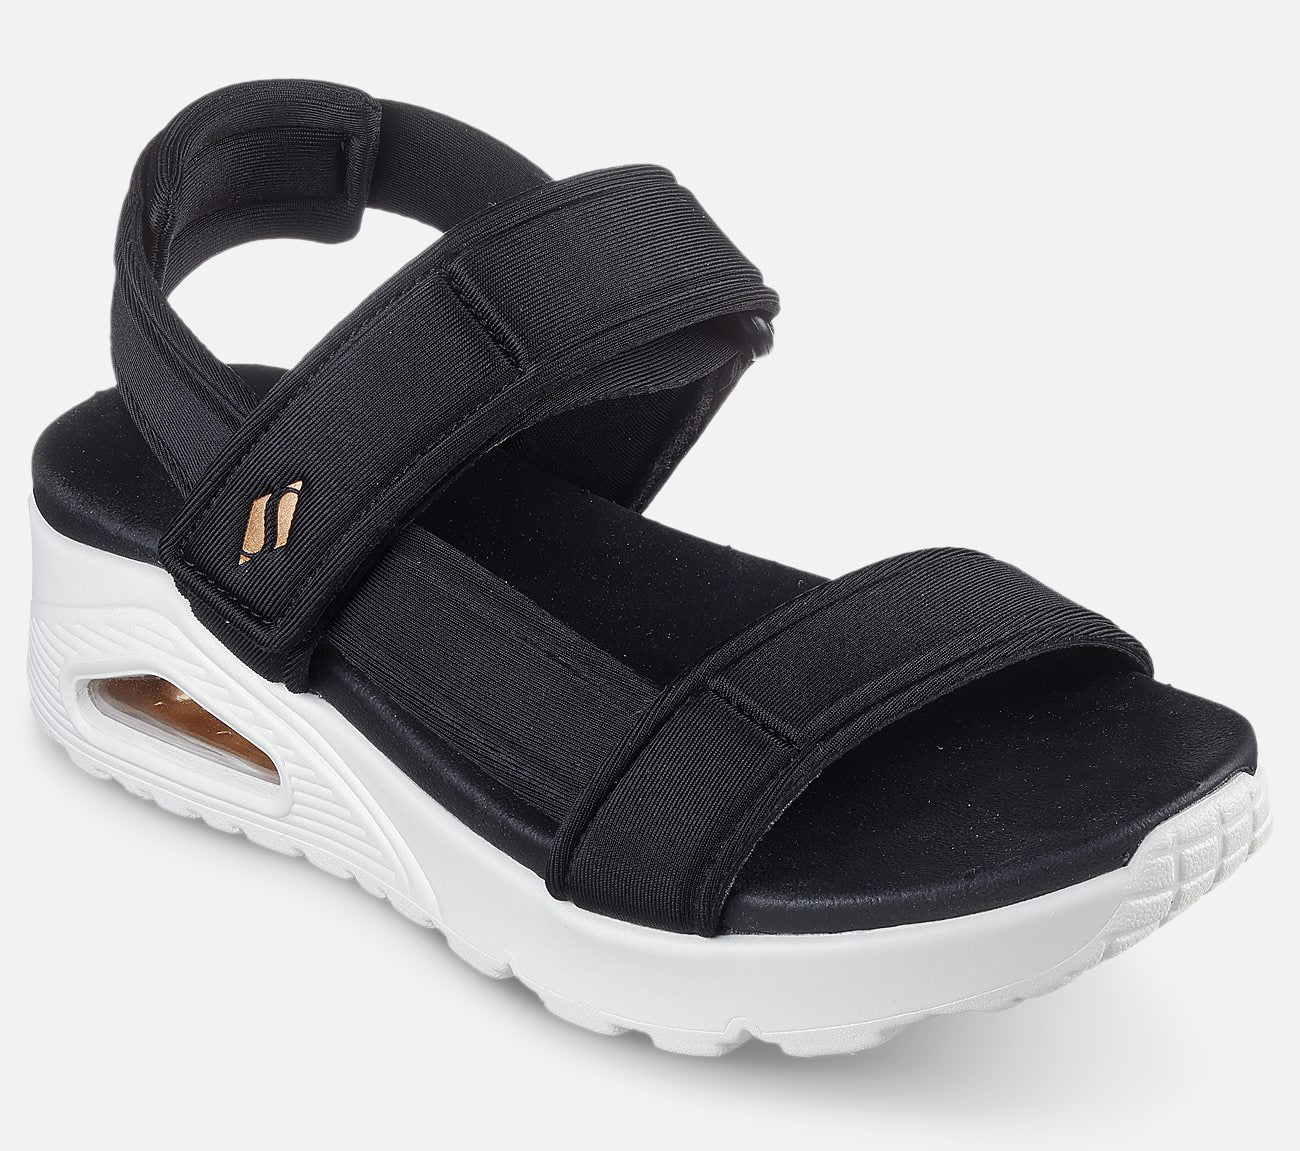 Uno - Summerstand2 Sandal Skechers